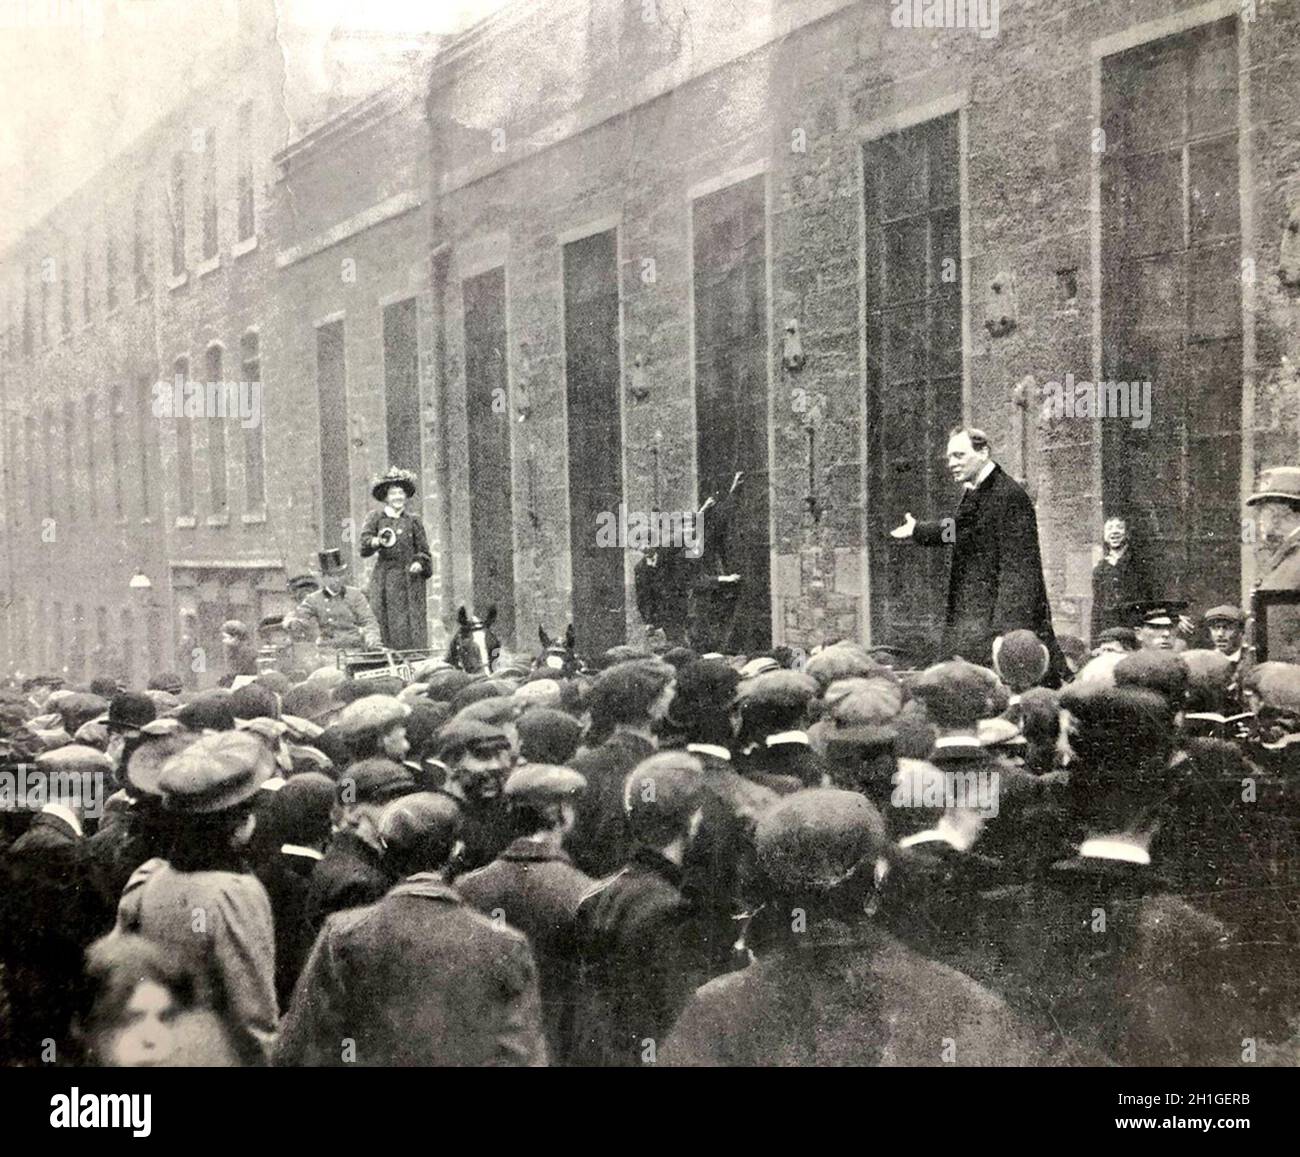 Horatia Dorothy Malony (1884 - 1921) Miss Maloney, Miss Molony, irische Suffragette-Aktivistin und Mitglied der Women's Social and Political Union (WSPU) und der Women's Freedom League nach ihrer Trennung von der WSPU. Sie störte die Nachwahl von Dundee 1908 bekanntermaßen, indem sie jedes Mal, wenn Winston Churchill versuchte, eine Menschenmenge anzusprechen, eine Glocke läutete. Stockfoto